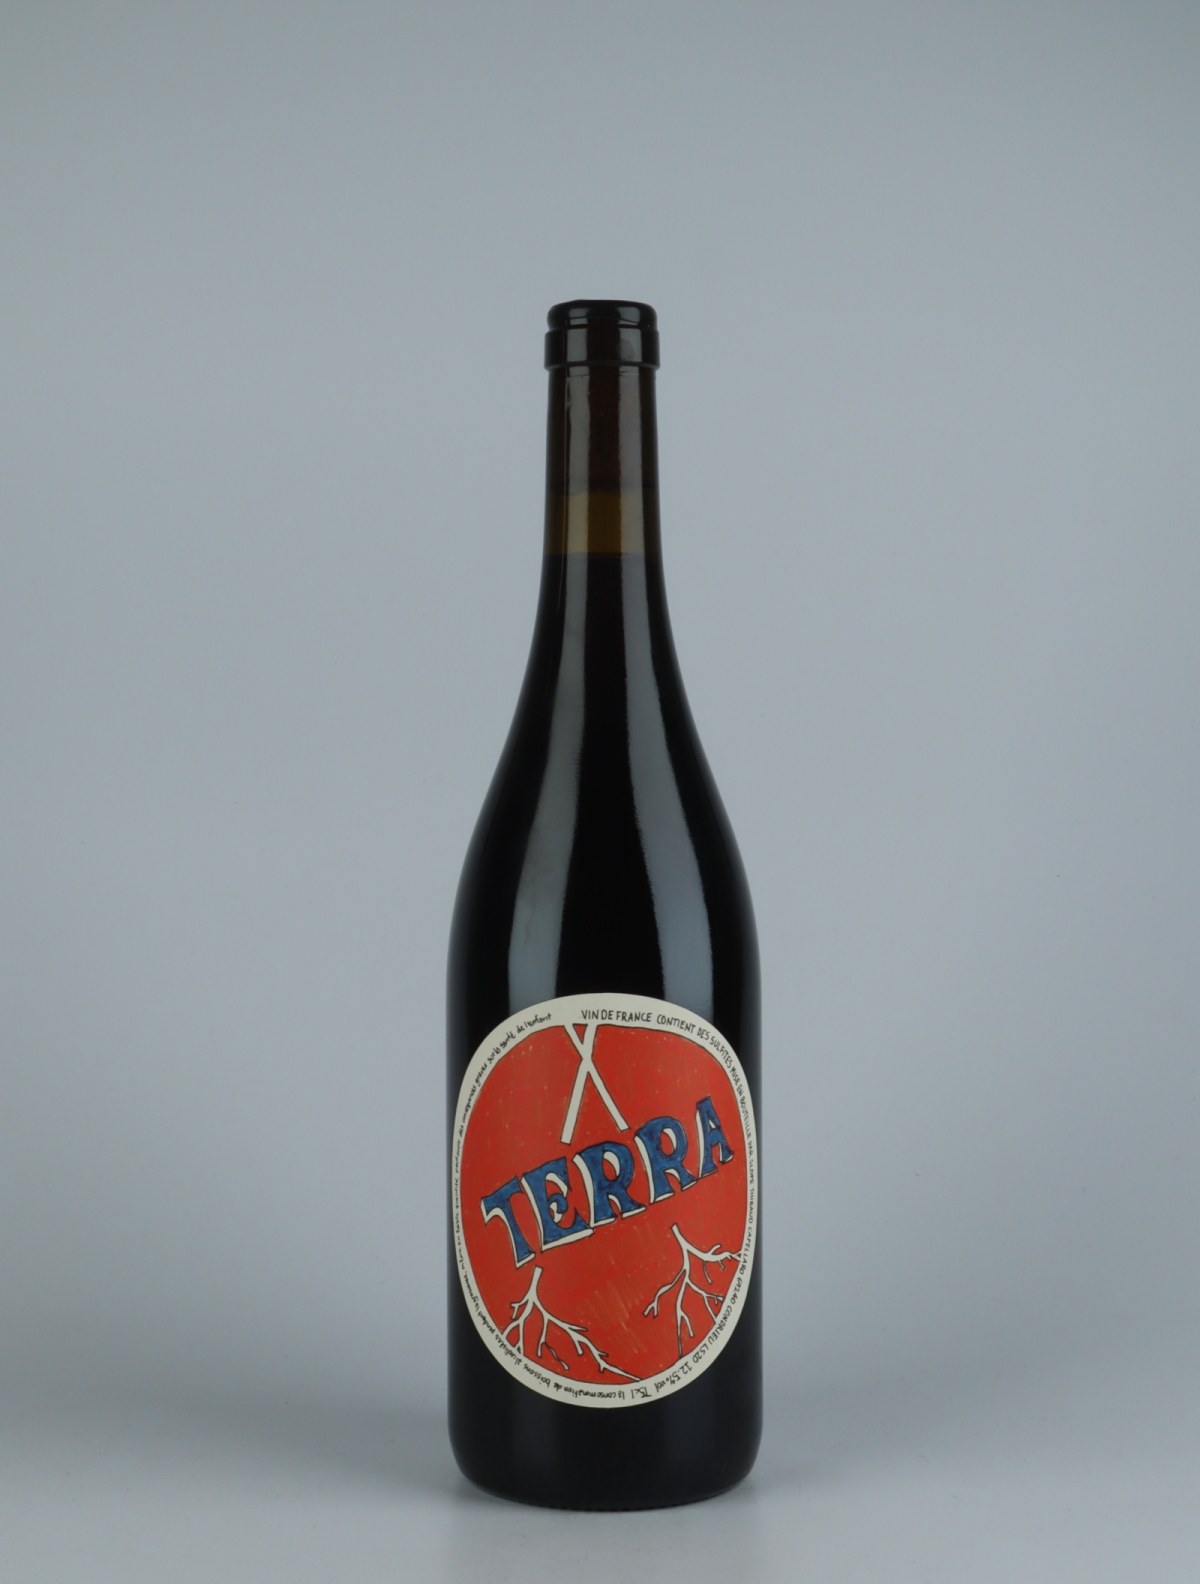 A bottle 2020 Terra Red wine from Slope, Rhône in France